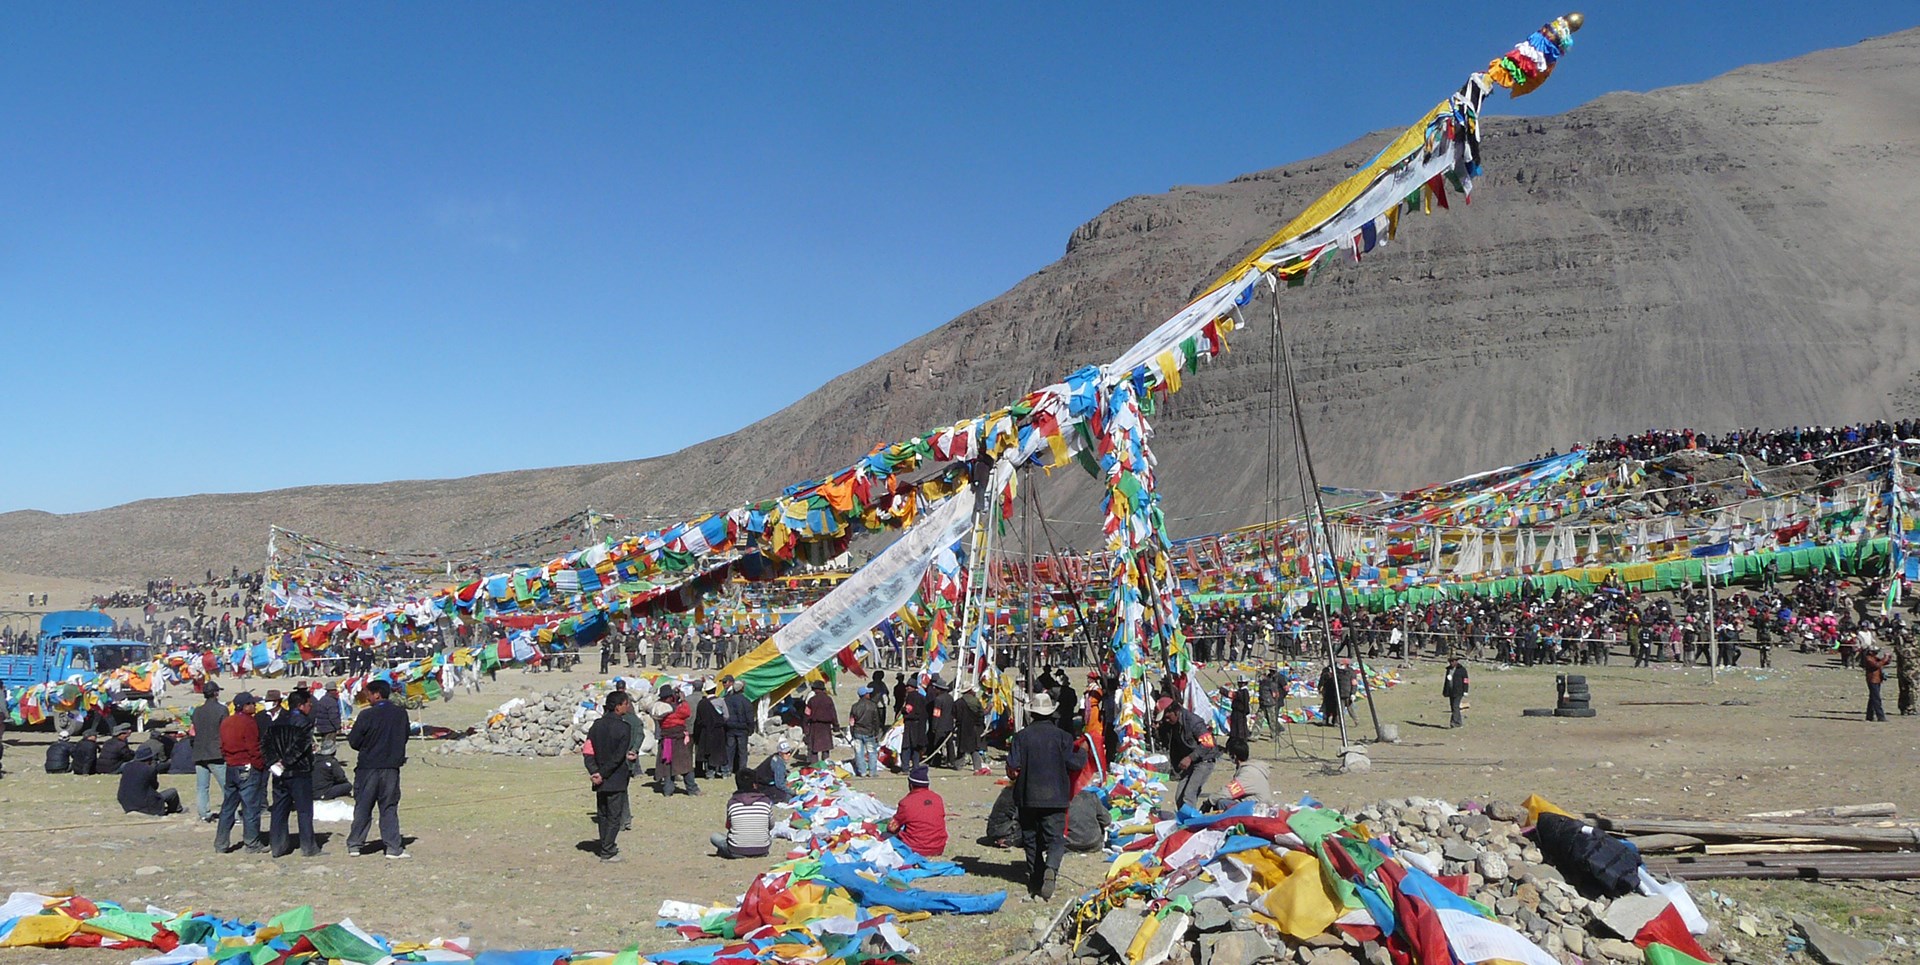 Fête Saga Dawa au Tibet